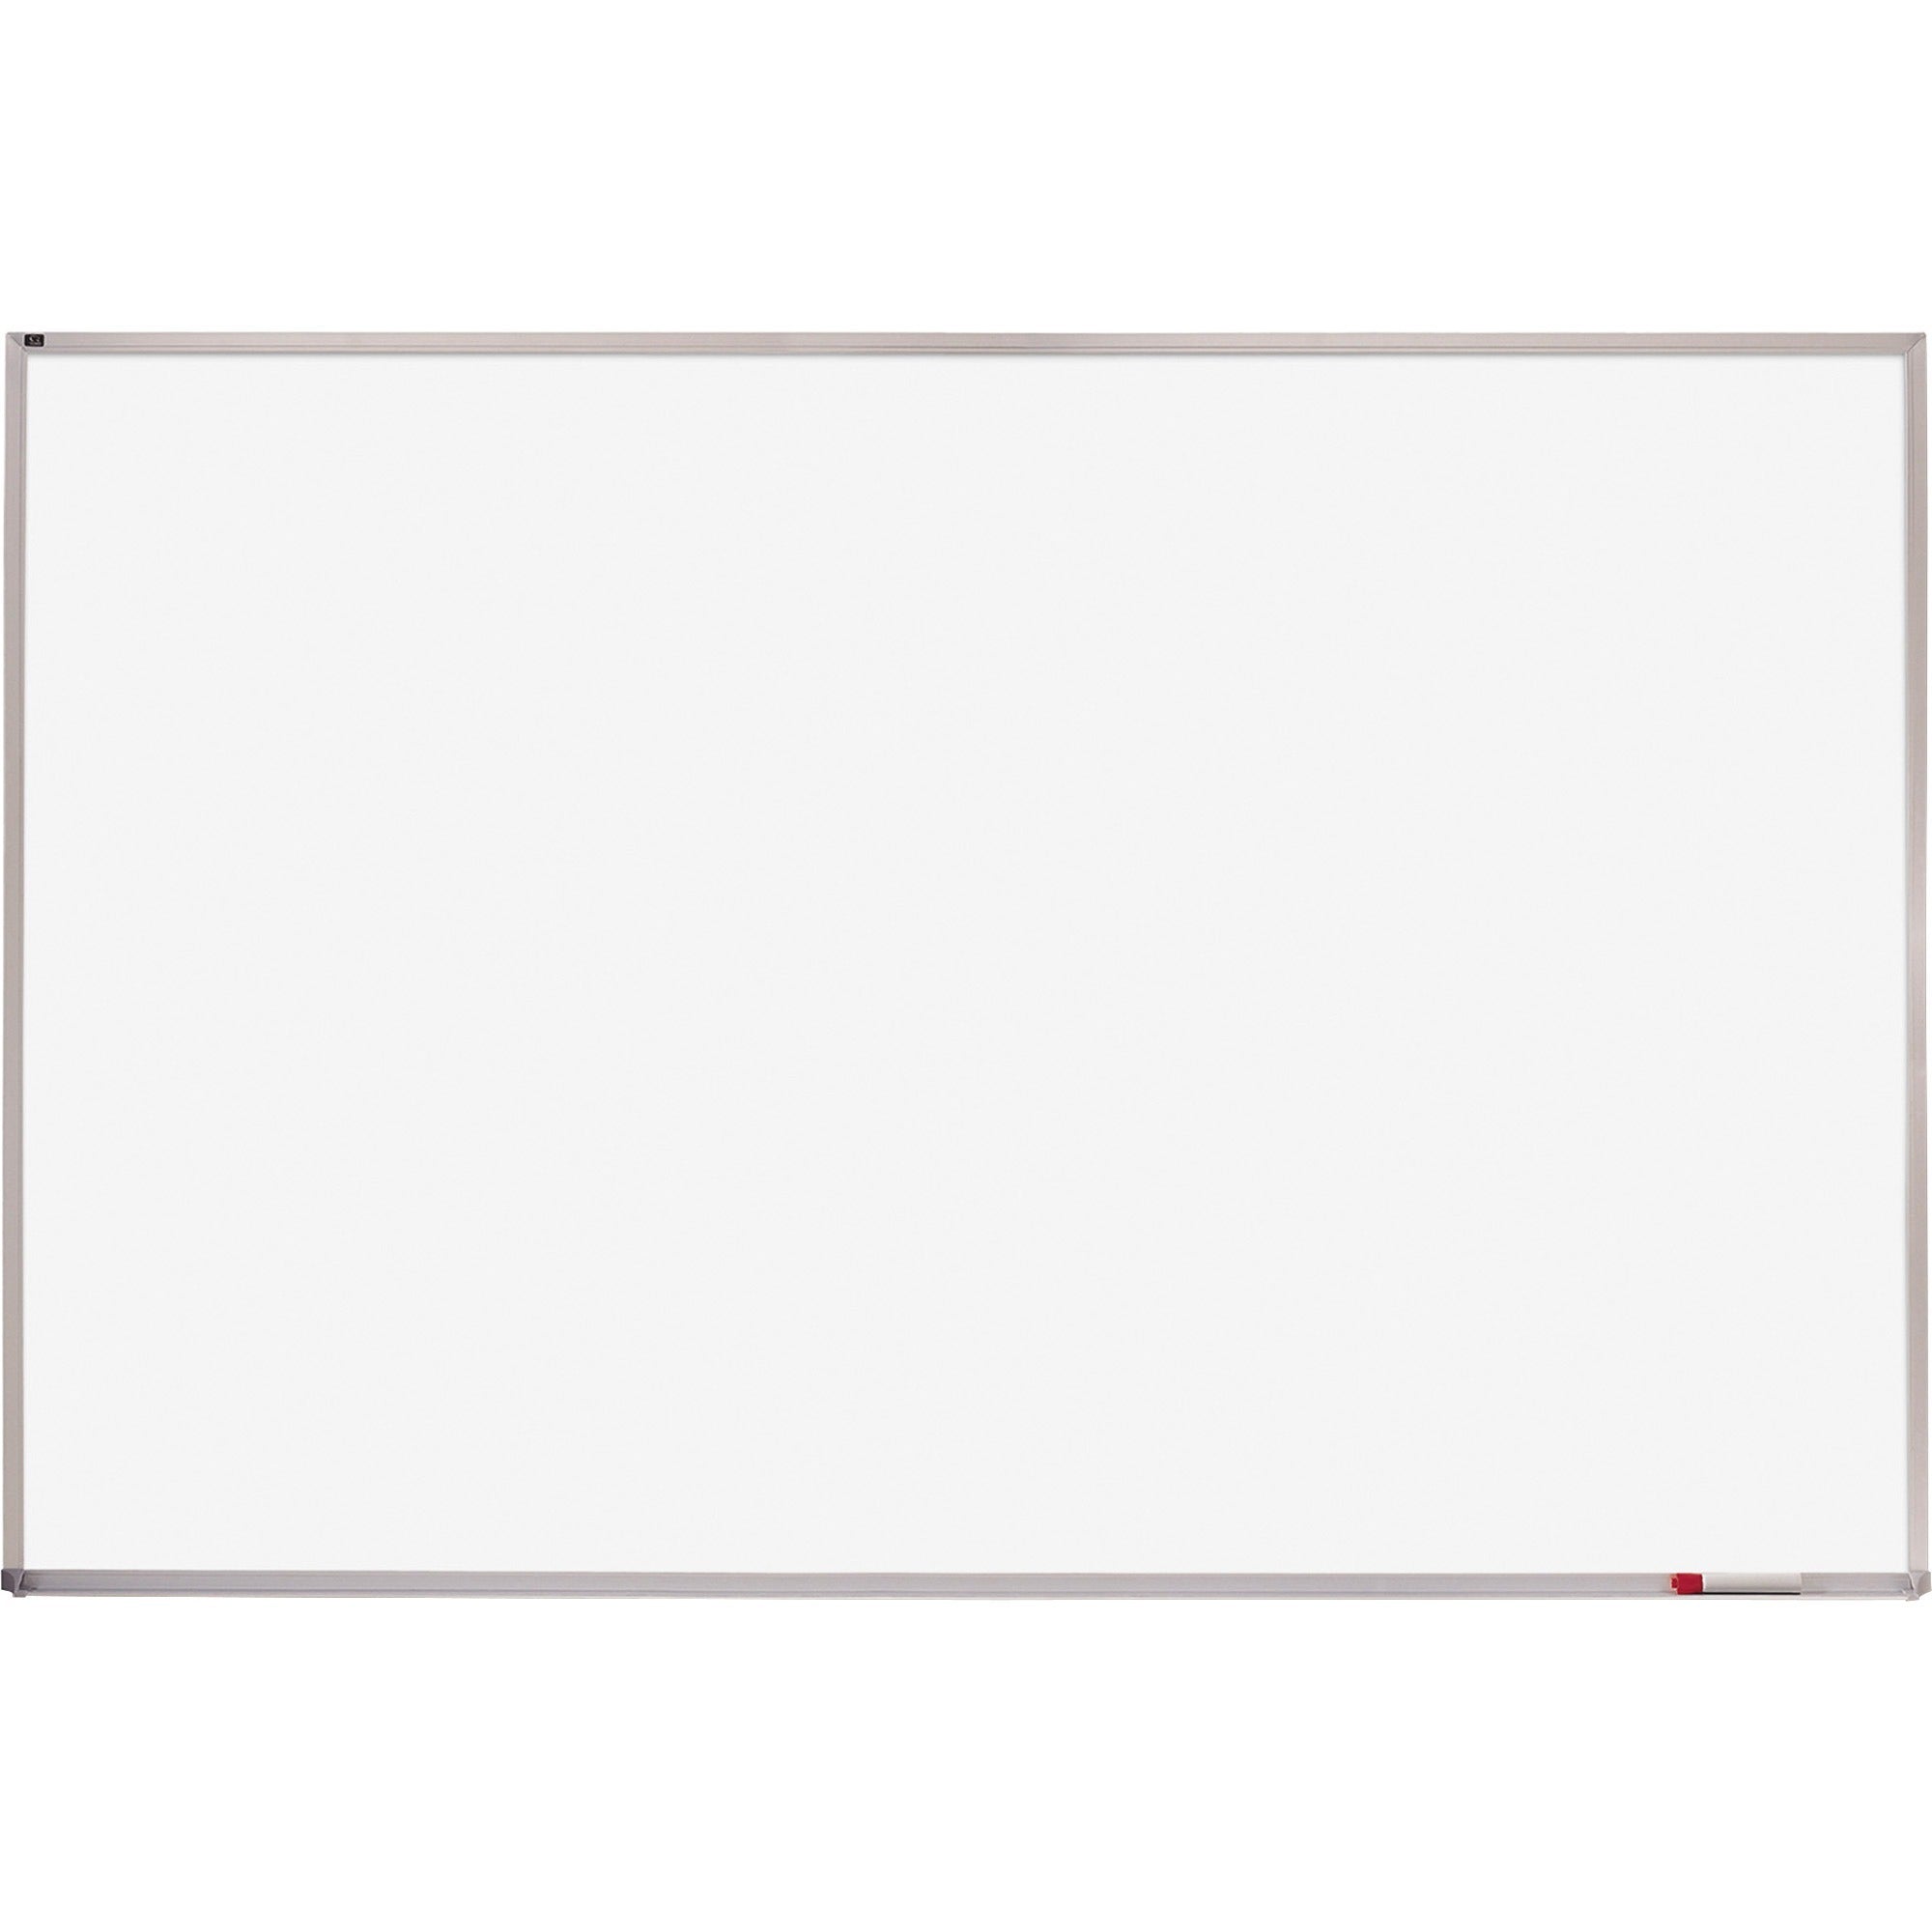 Quartet Whiteboard - 48" (4 ft) Width x 72" (6 ft) Height - White Melamine Surface - Silver Aluminum Frame - Horizontal - 1 Each - 